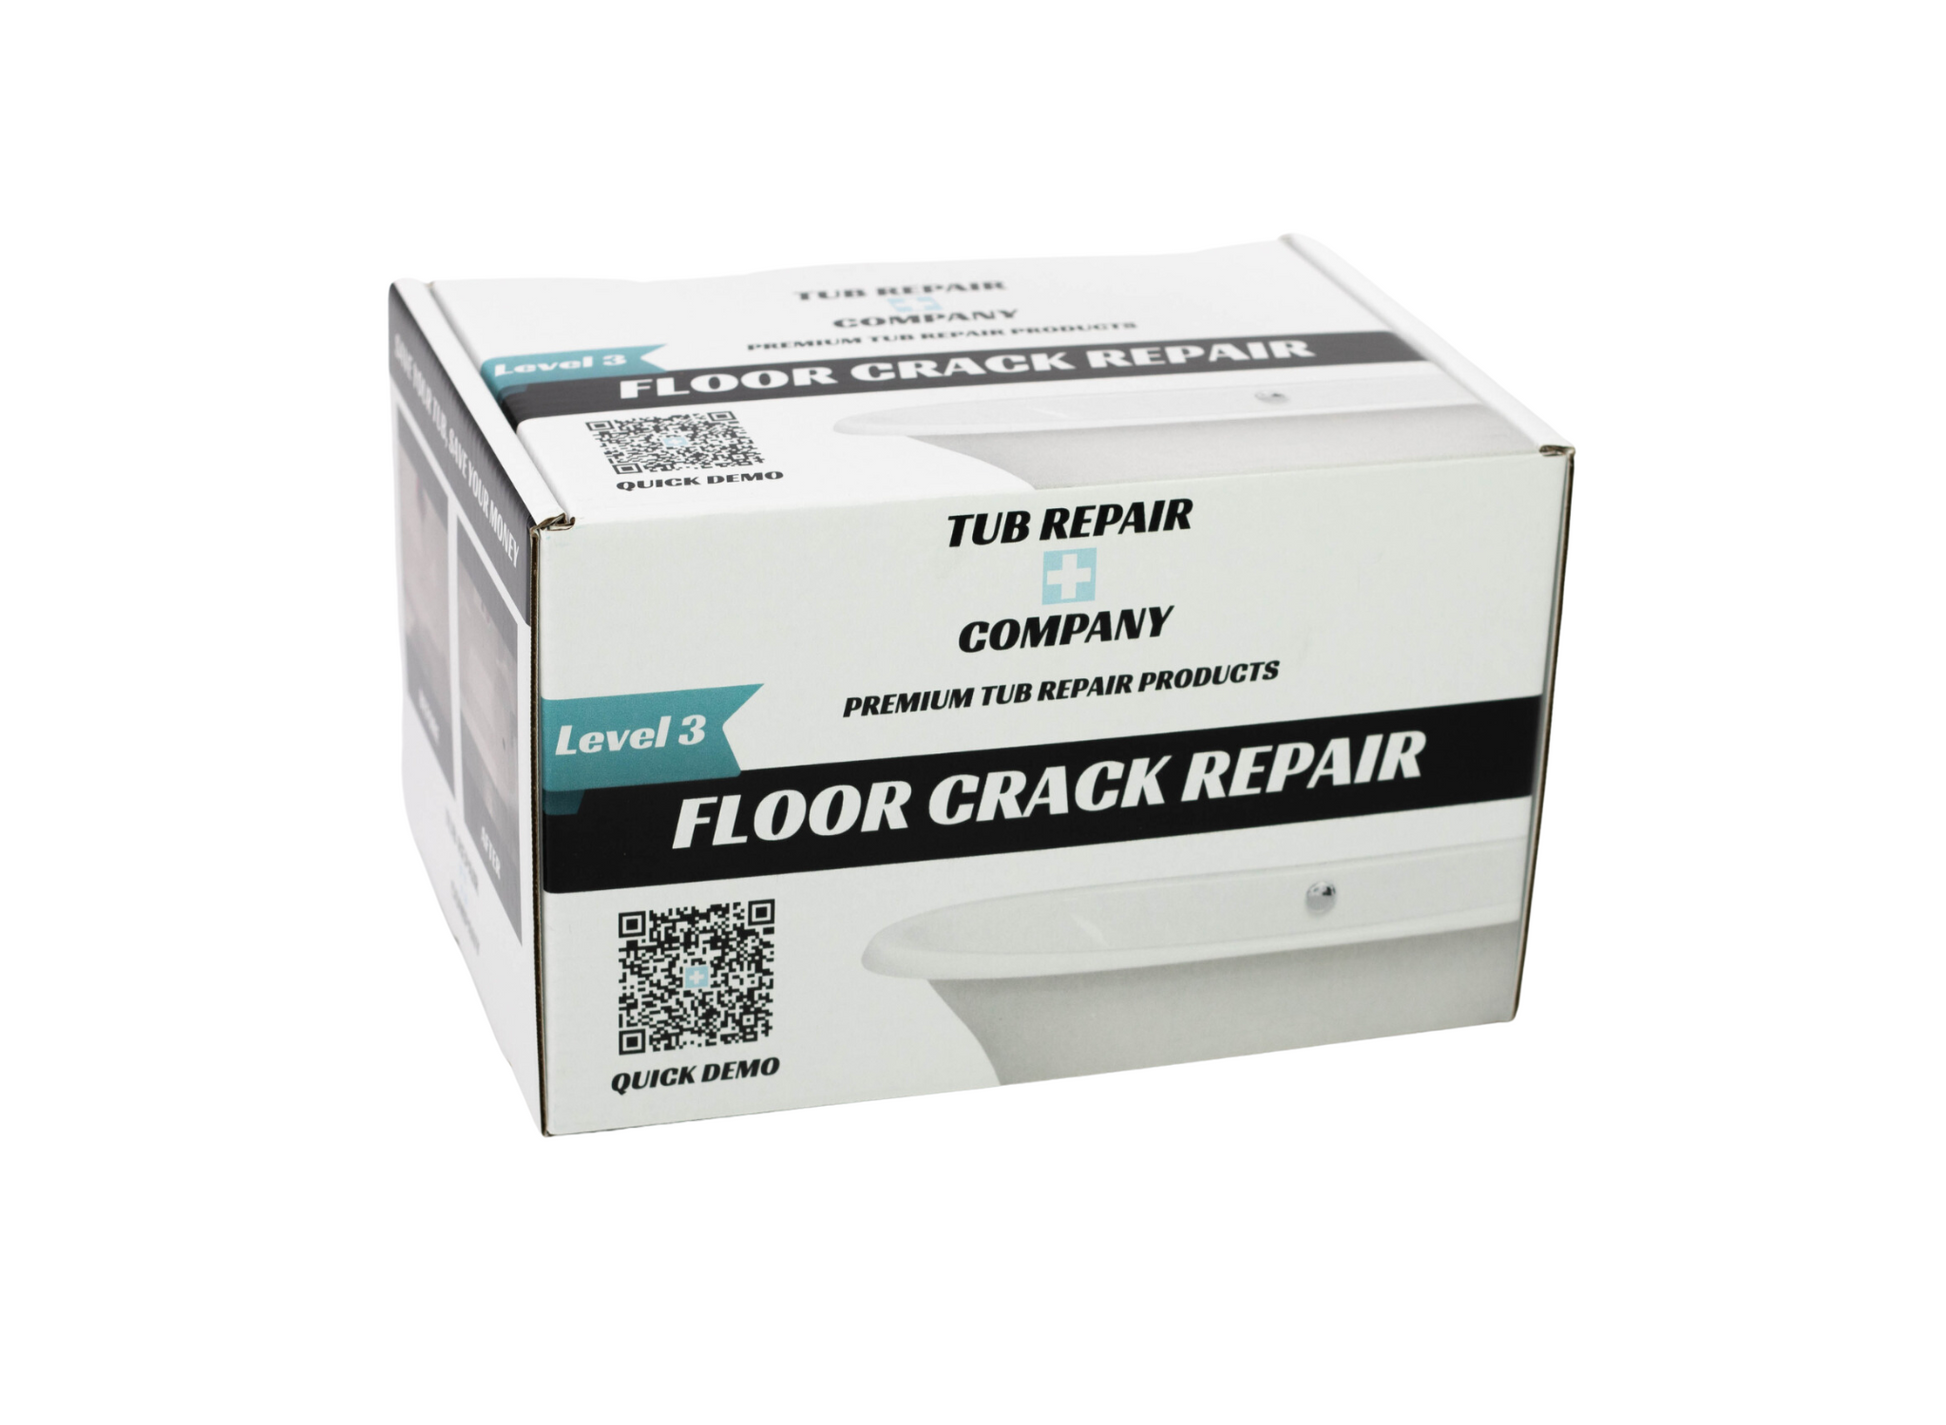 Tub Repair Kit for Floor Crack Repairs on Fiberglass and Acrylic